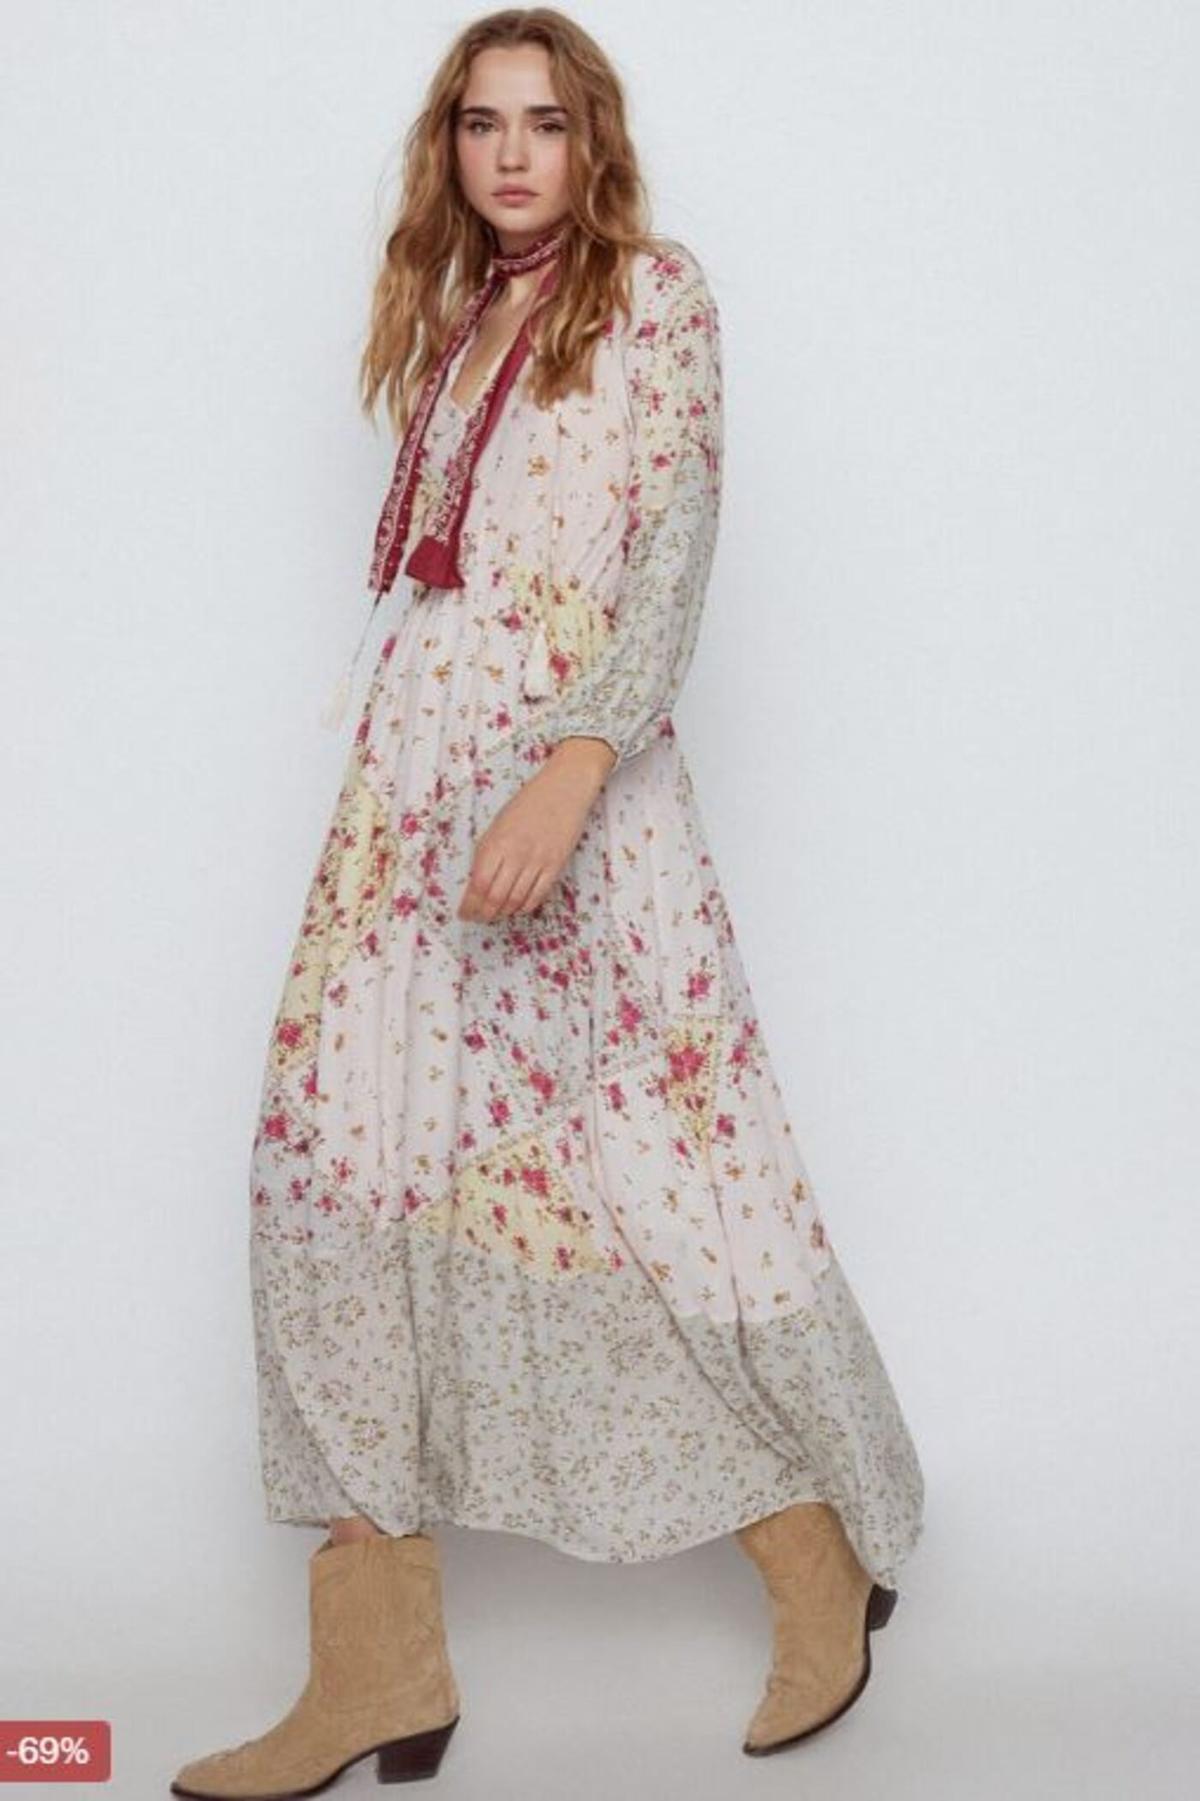 Vestido estampado patchwork floral  de Slowlove.